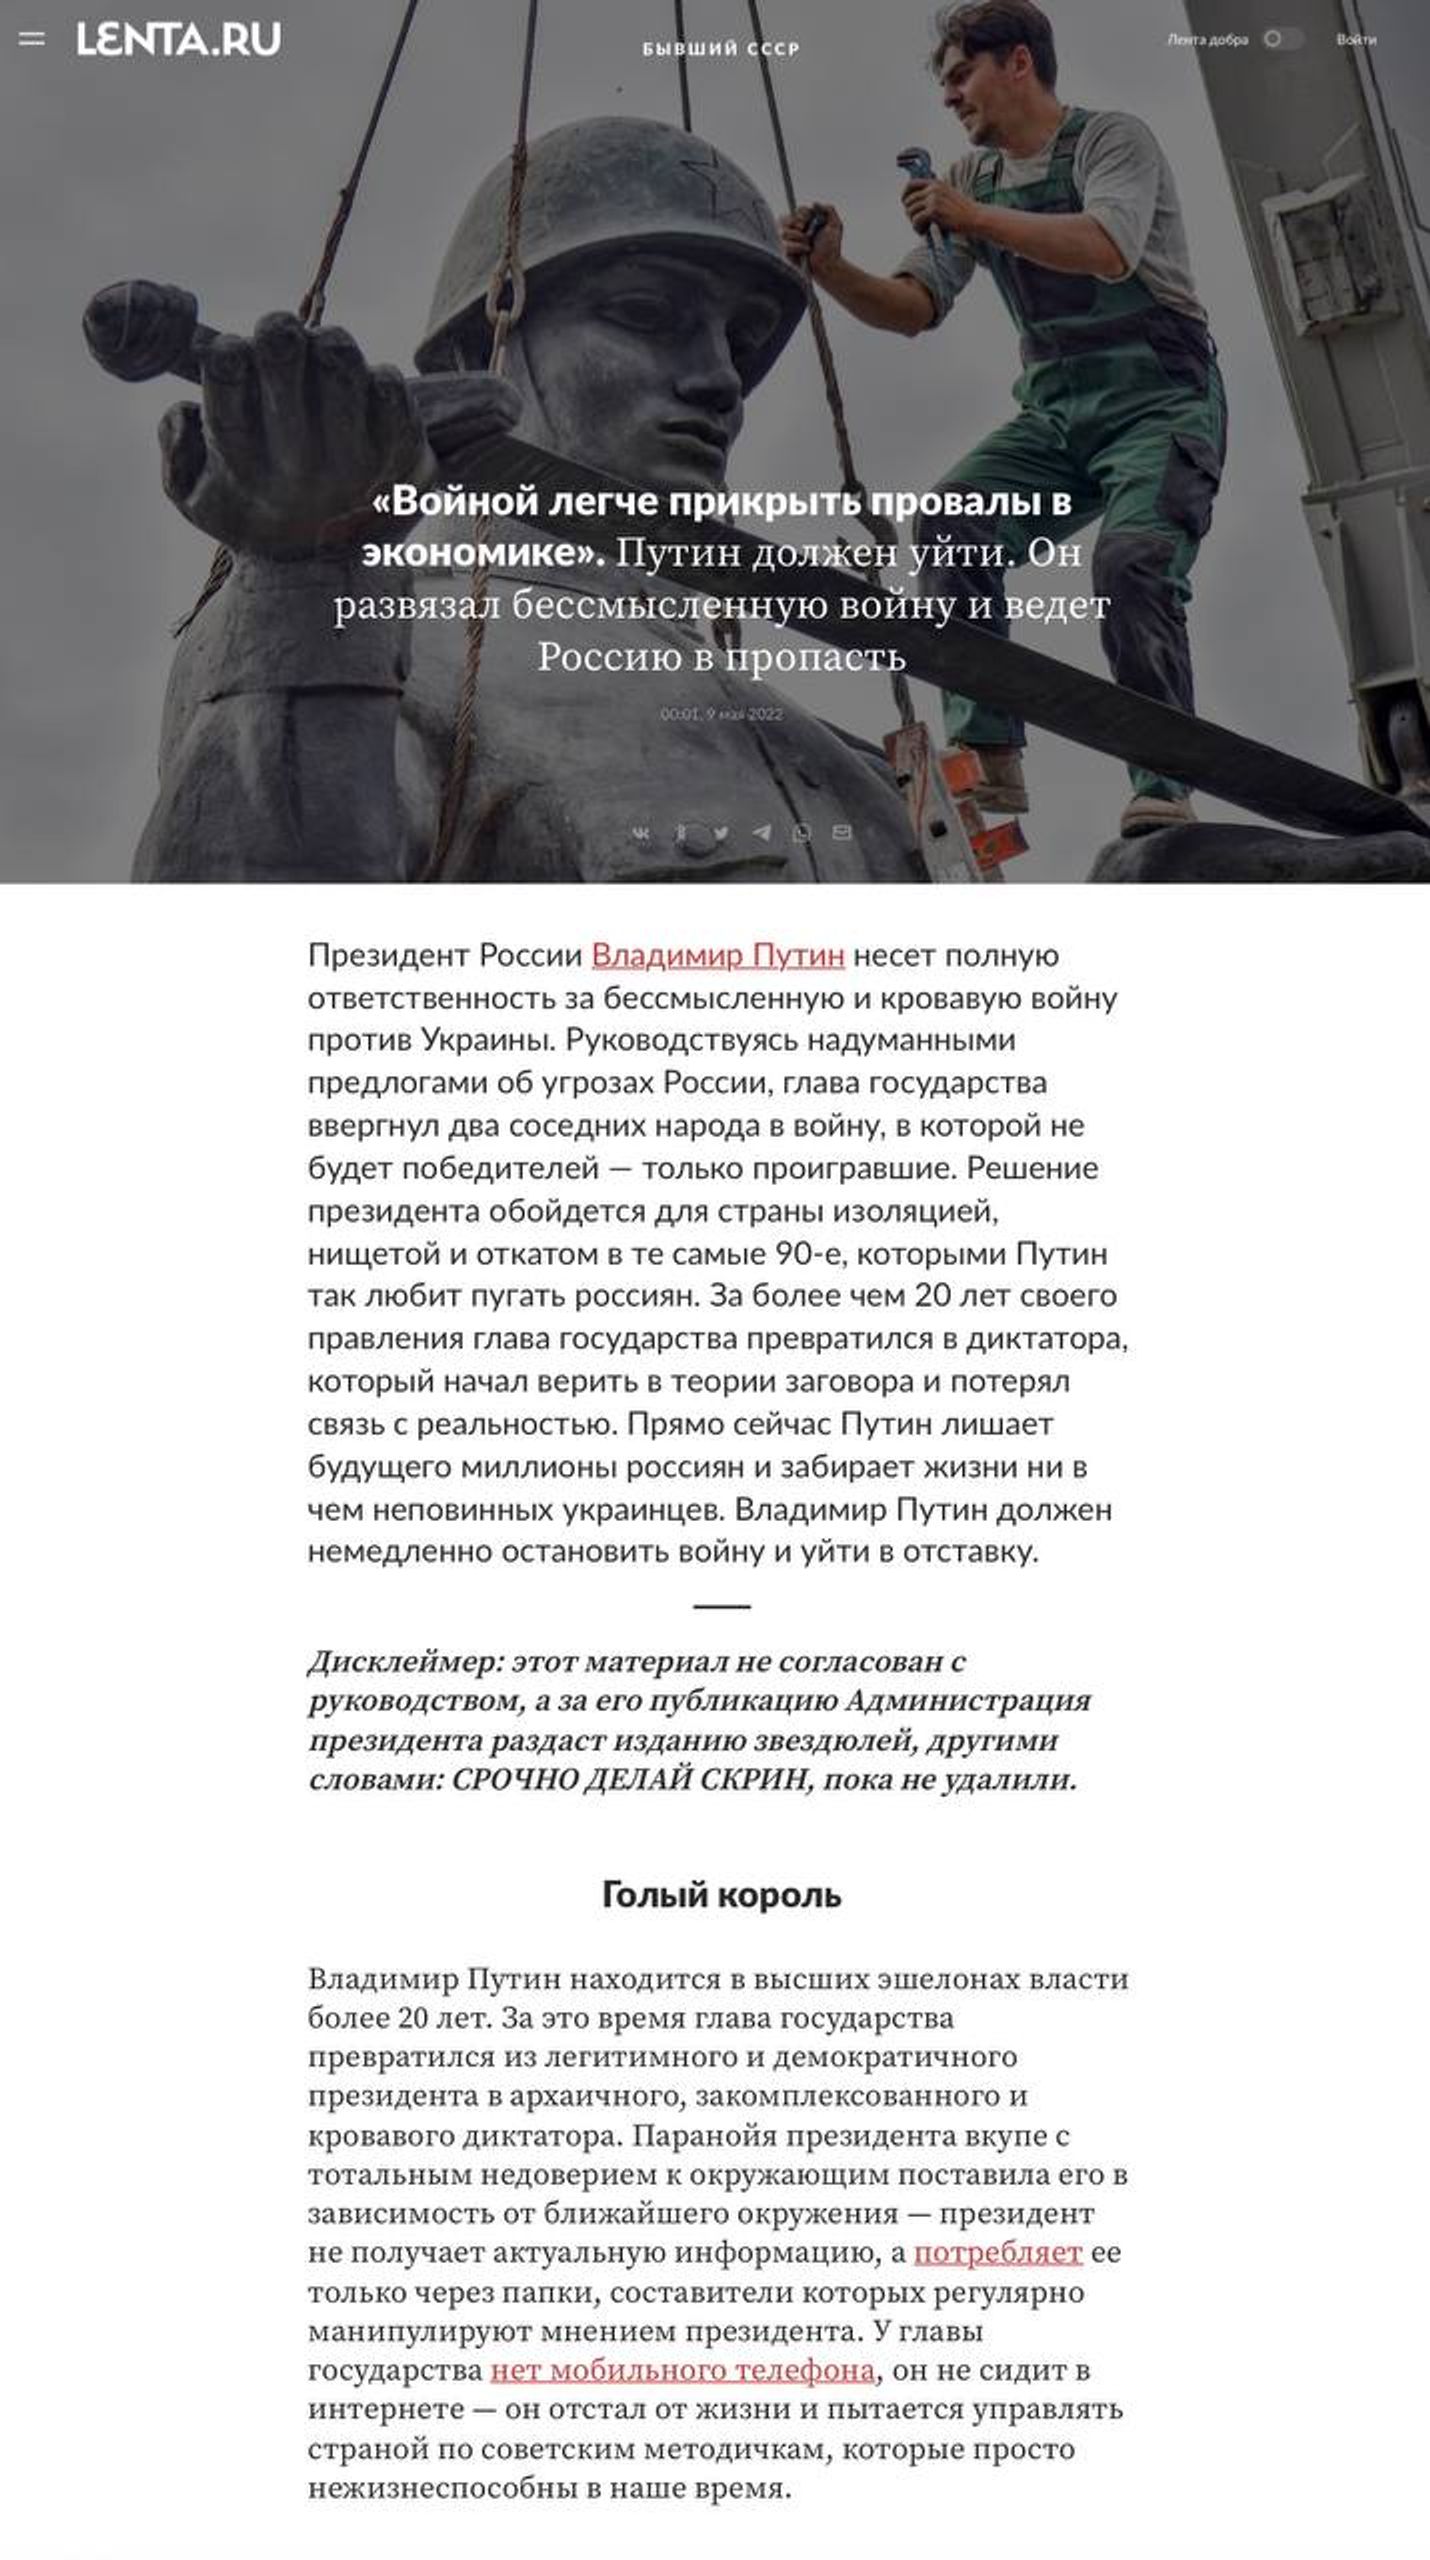 Скриншот материала с сайта Lenta.ru